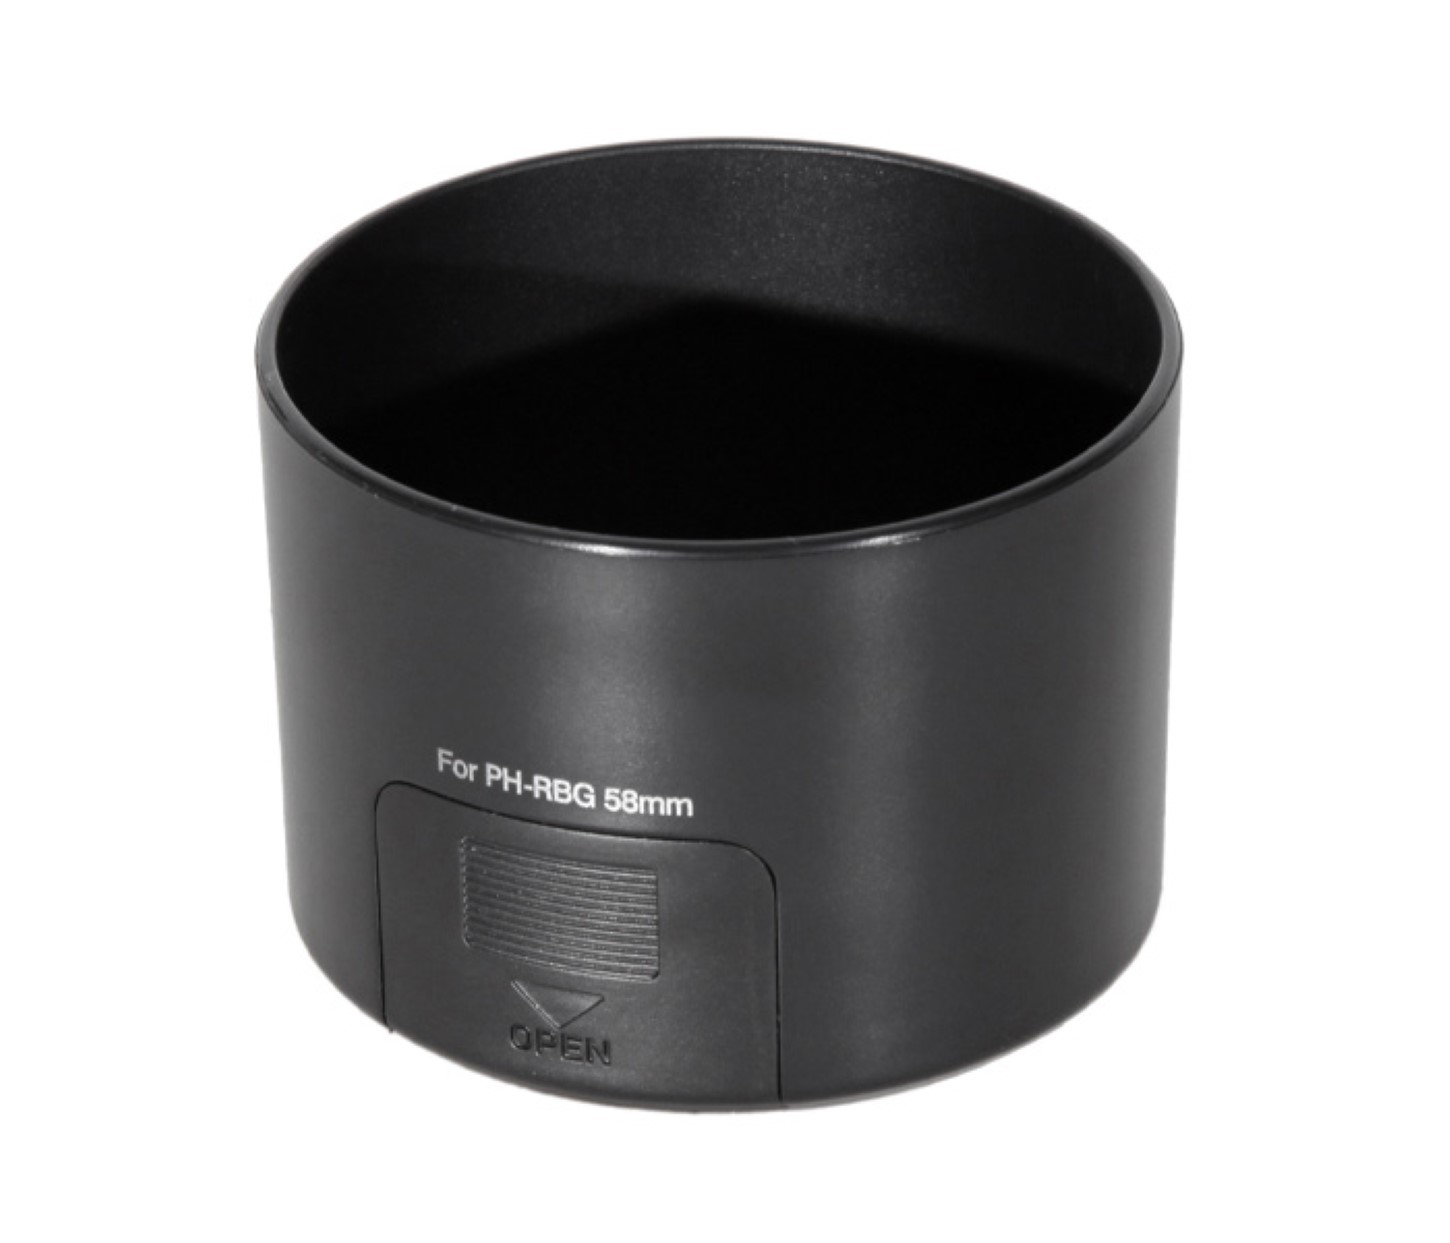 58mm AYEX Gegenlichtblende Pentax PH-RBG Gegenlichtblende, 55-300mm, für Pentax 55-300mm passend Streulichtblende für Black,